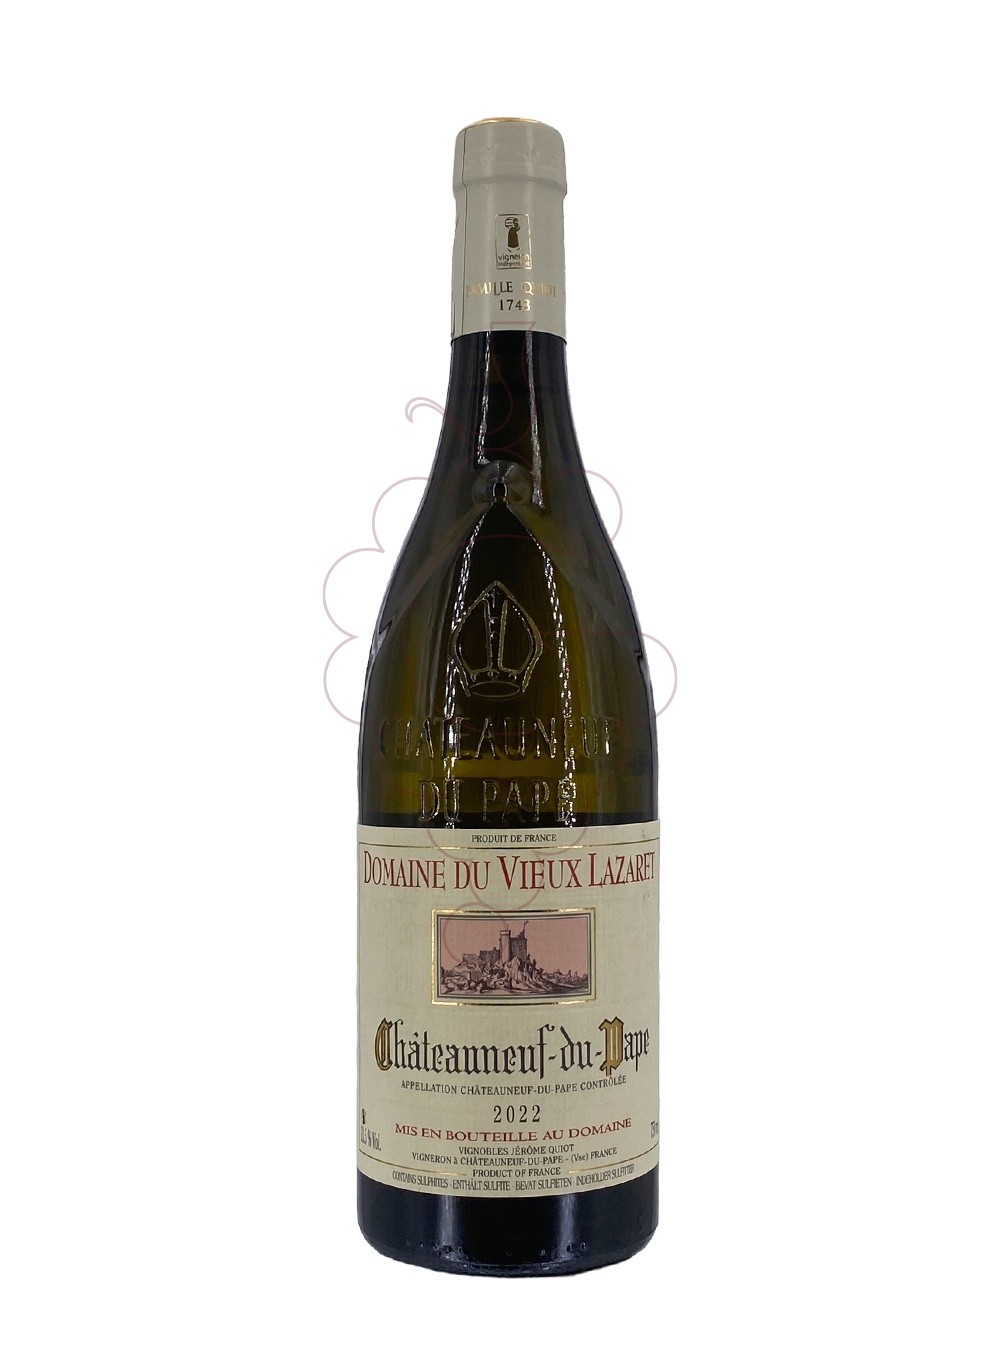 Foto Vieux lazaret chat-pape bl 22 vino blanco